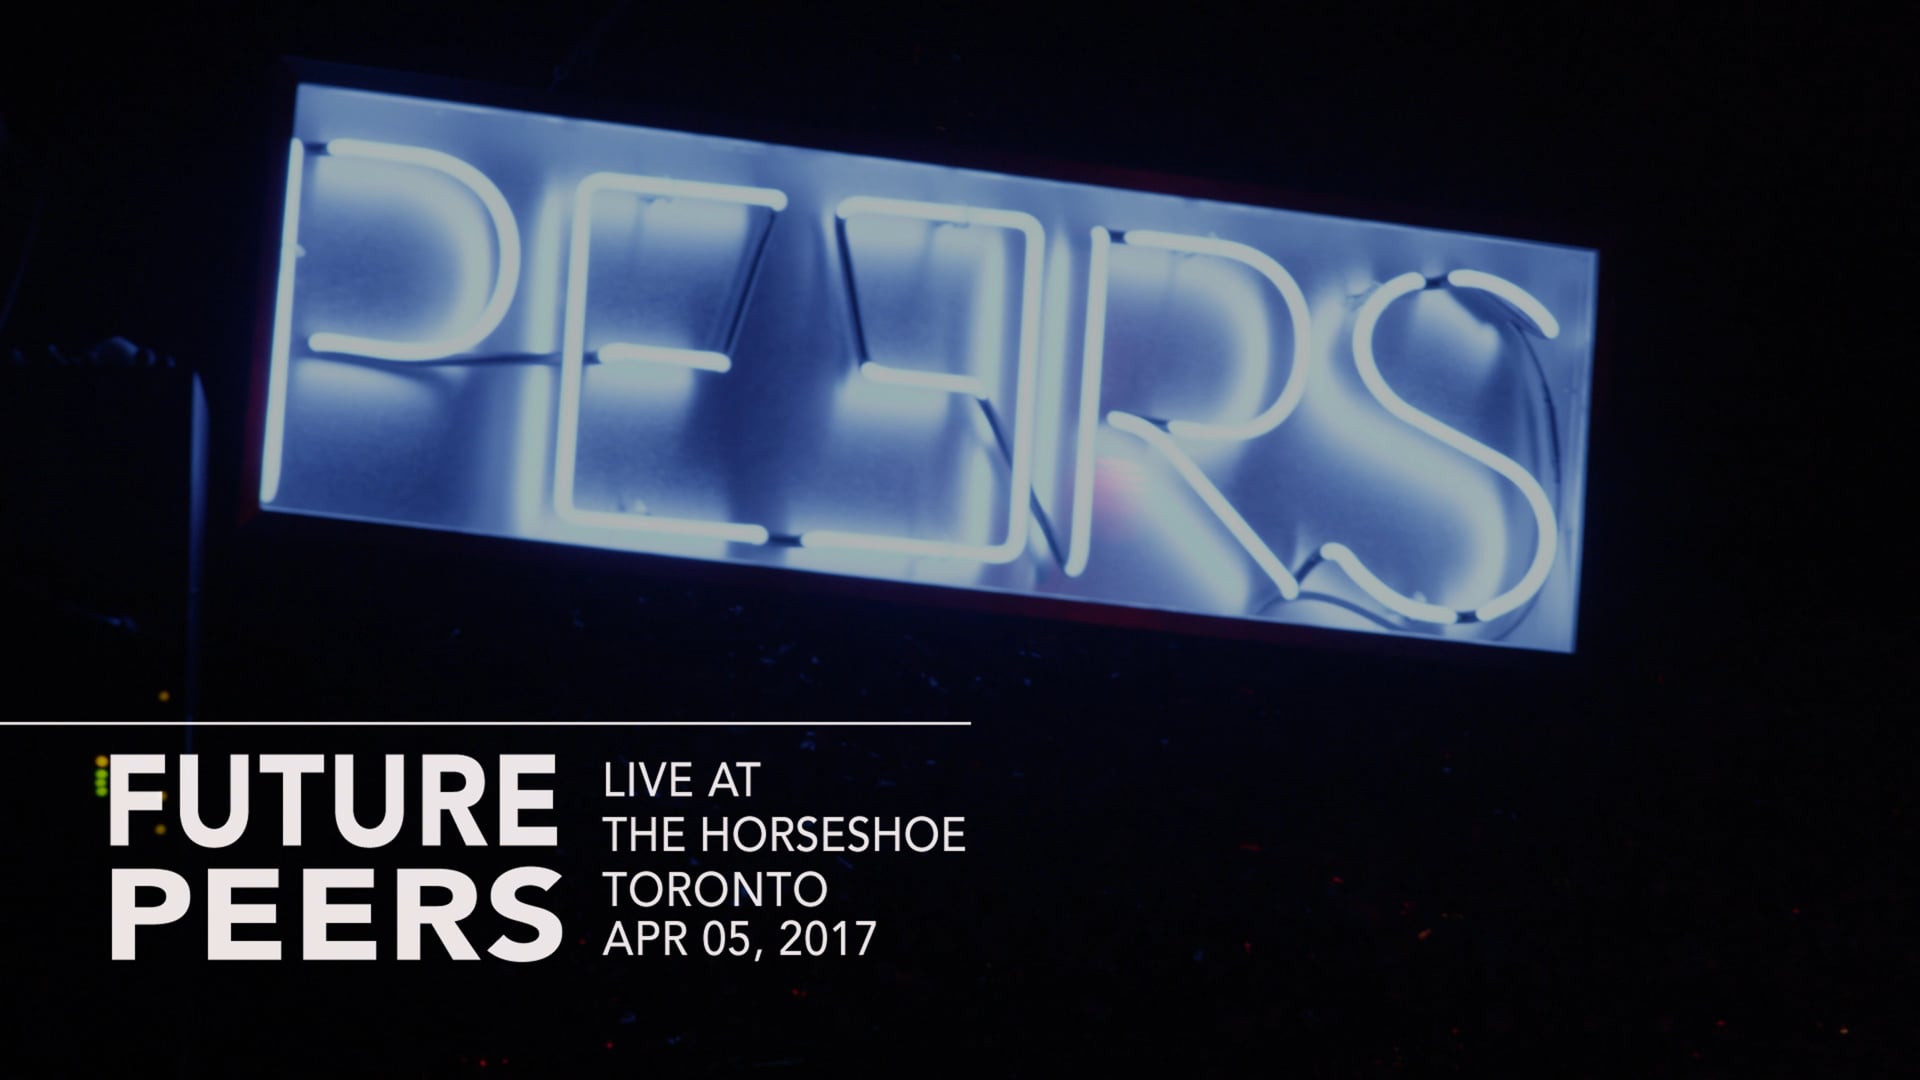 FUTURE PEERS Live at The Horseshoe